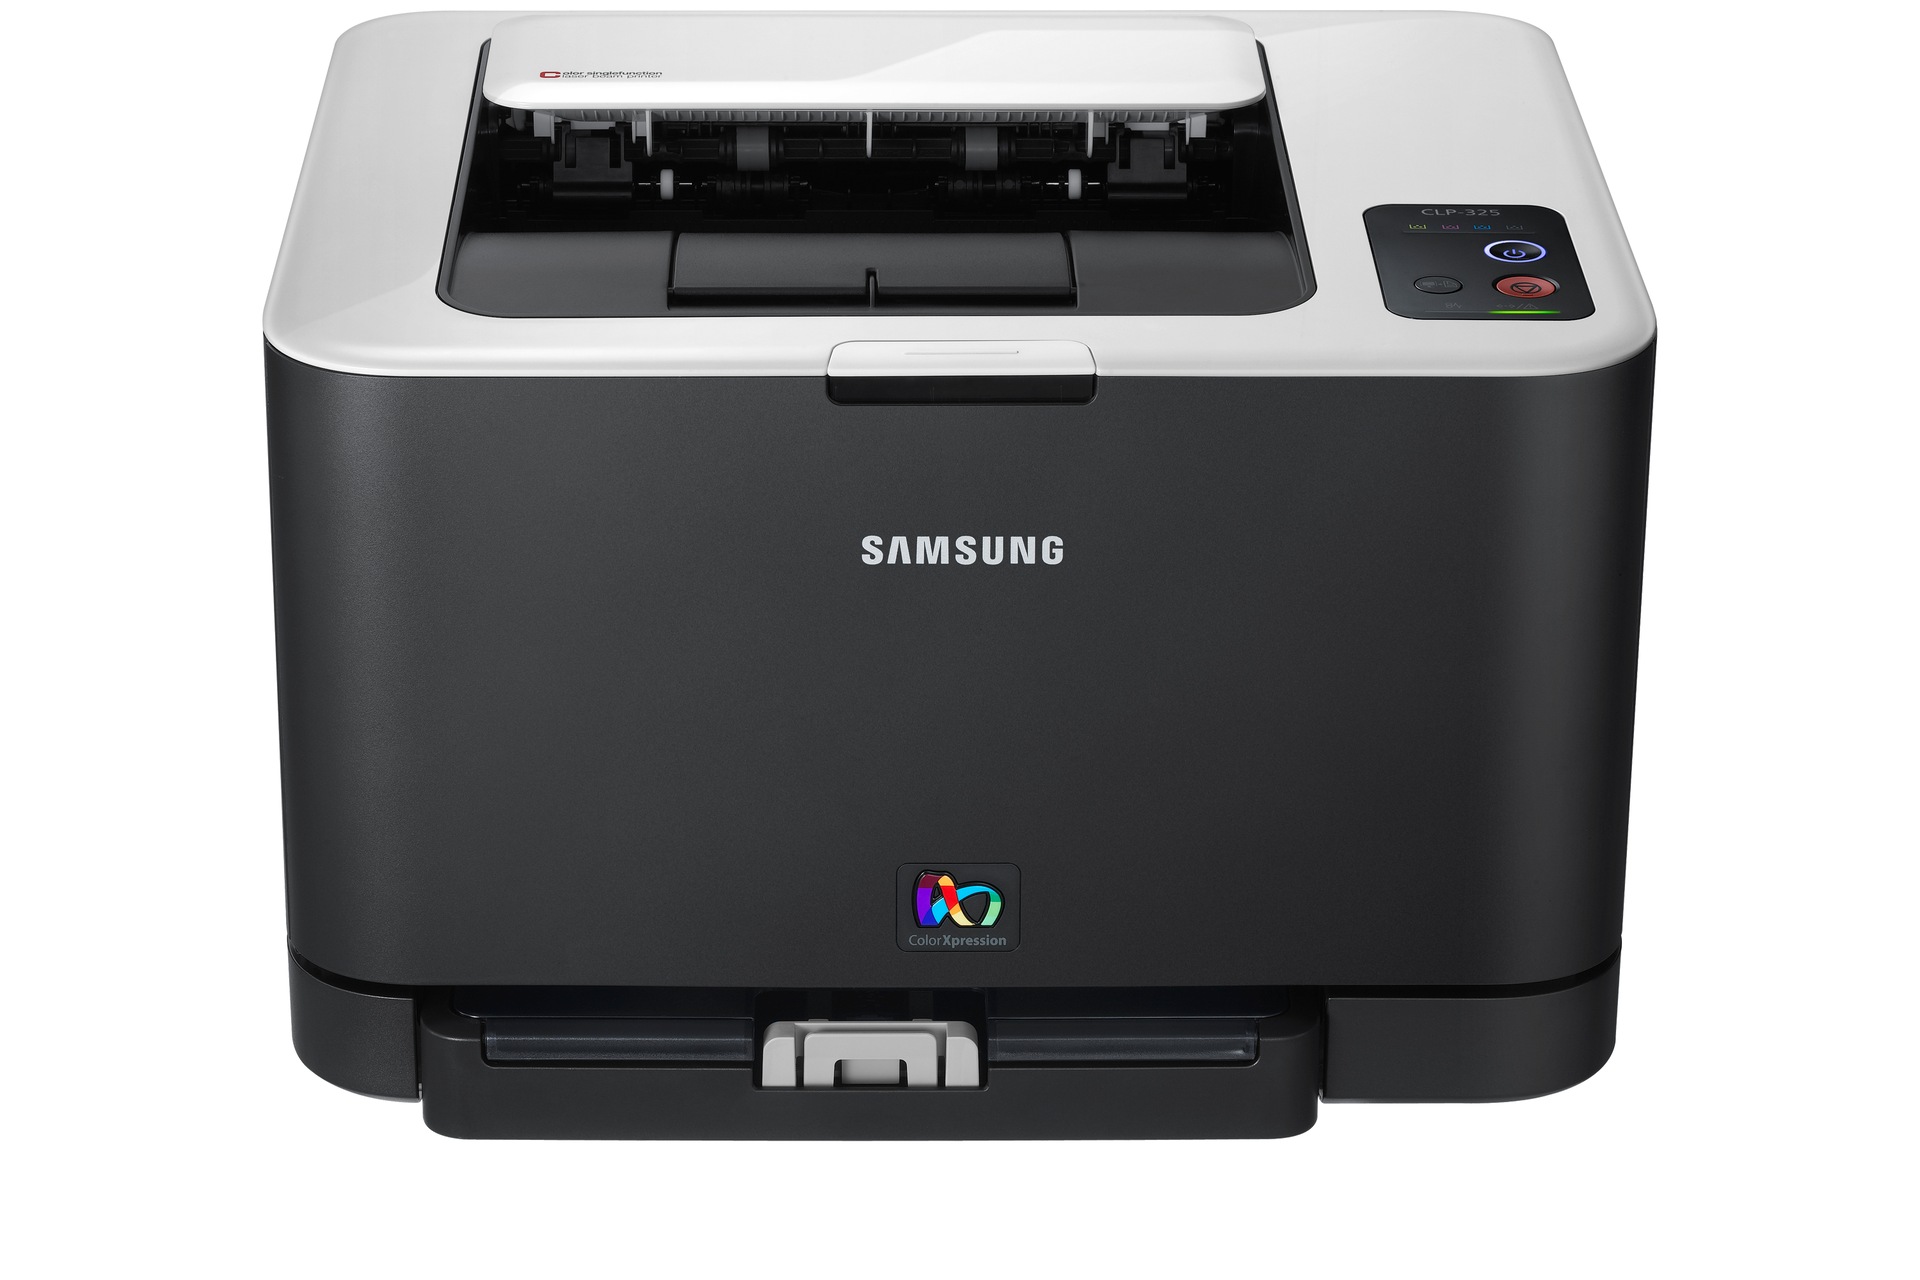 Samsung Color Laser Printer   on Impresora L  Ser Color Clp 325w   Informaci  N General   Samsung